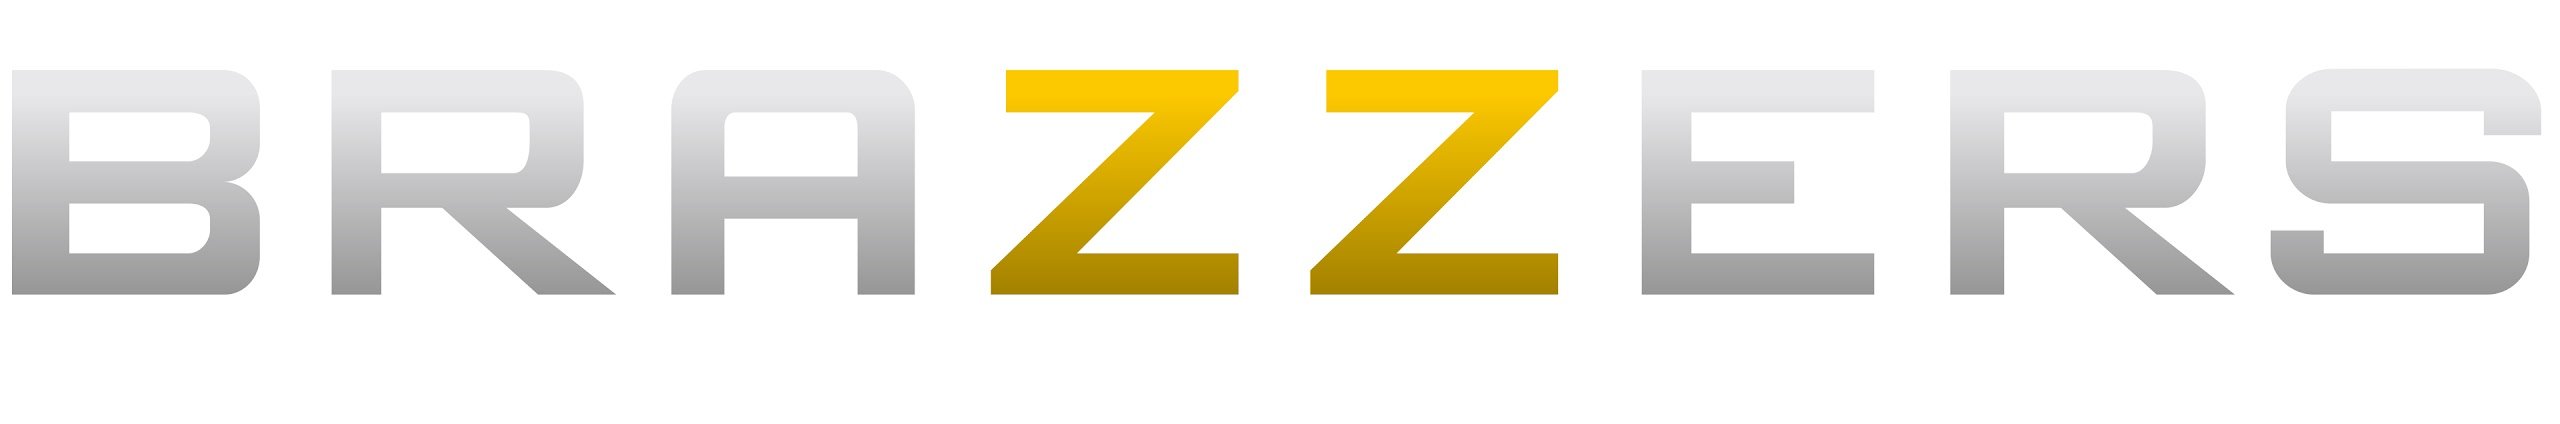 Логотип канала brazzers TV Europe.